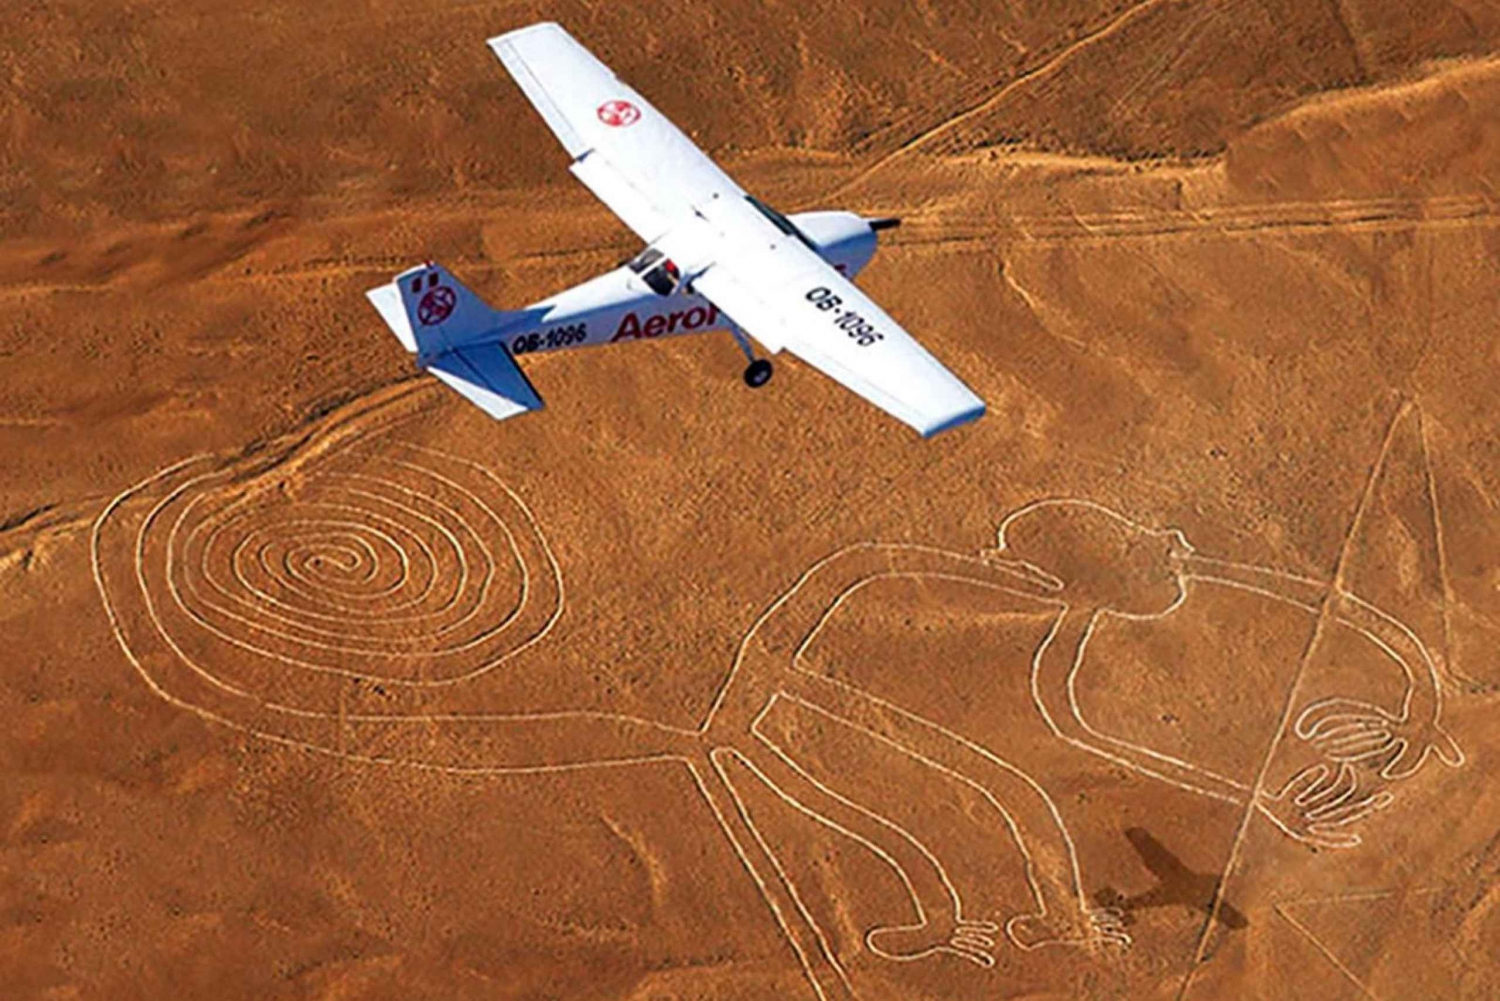 Ica: Lot nad liniami Nazca z lotniska Nazca